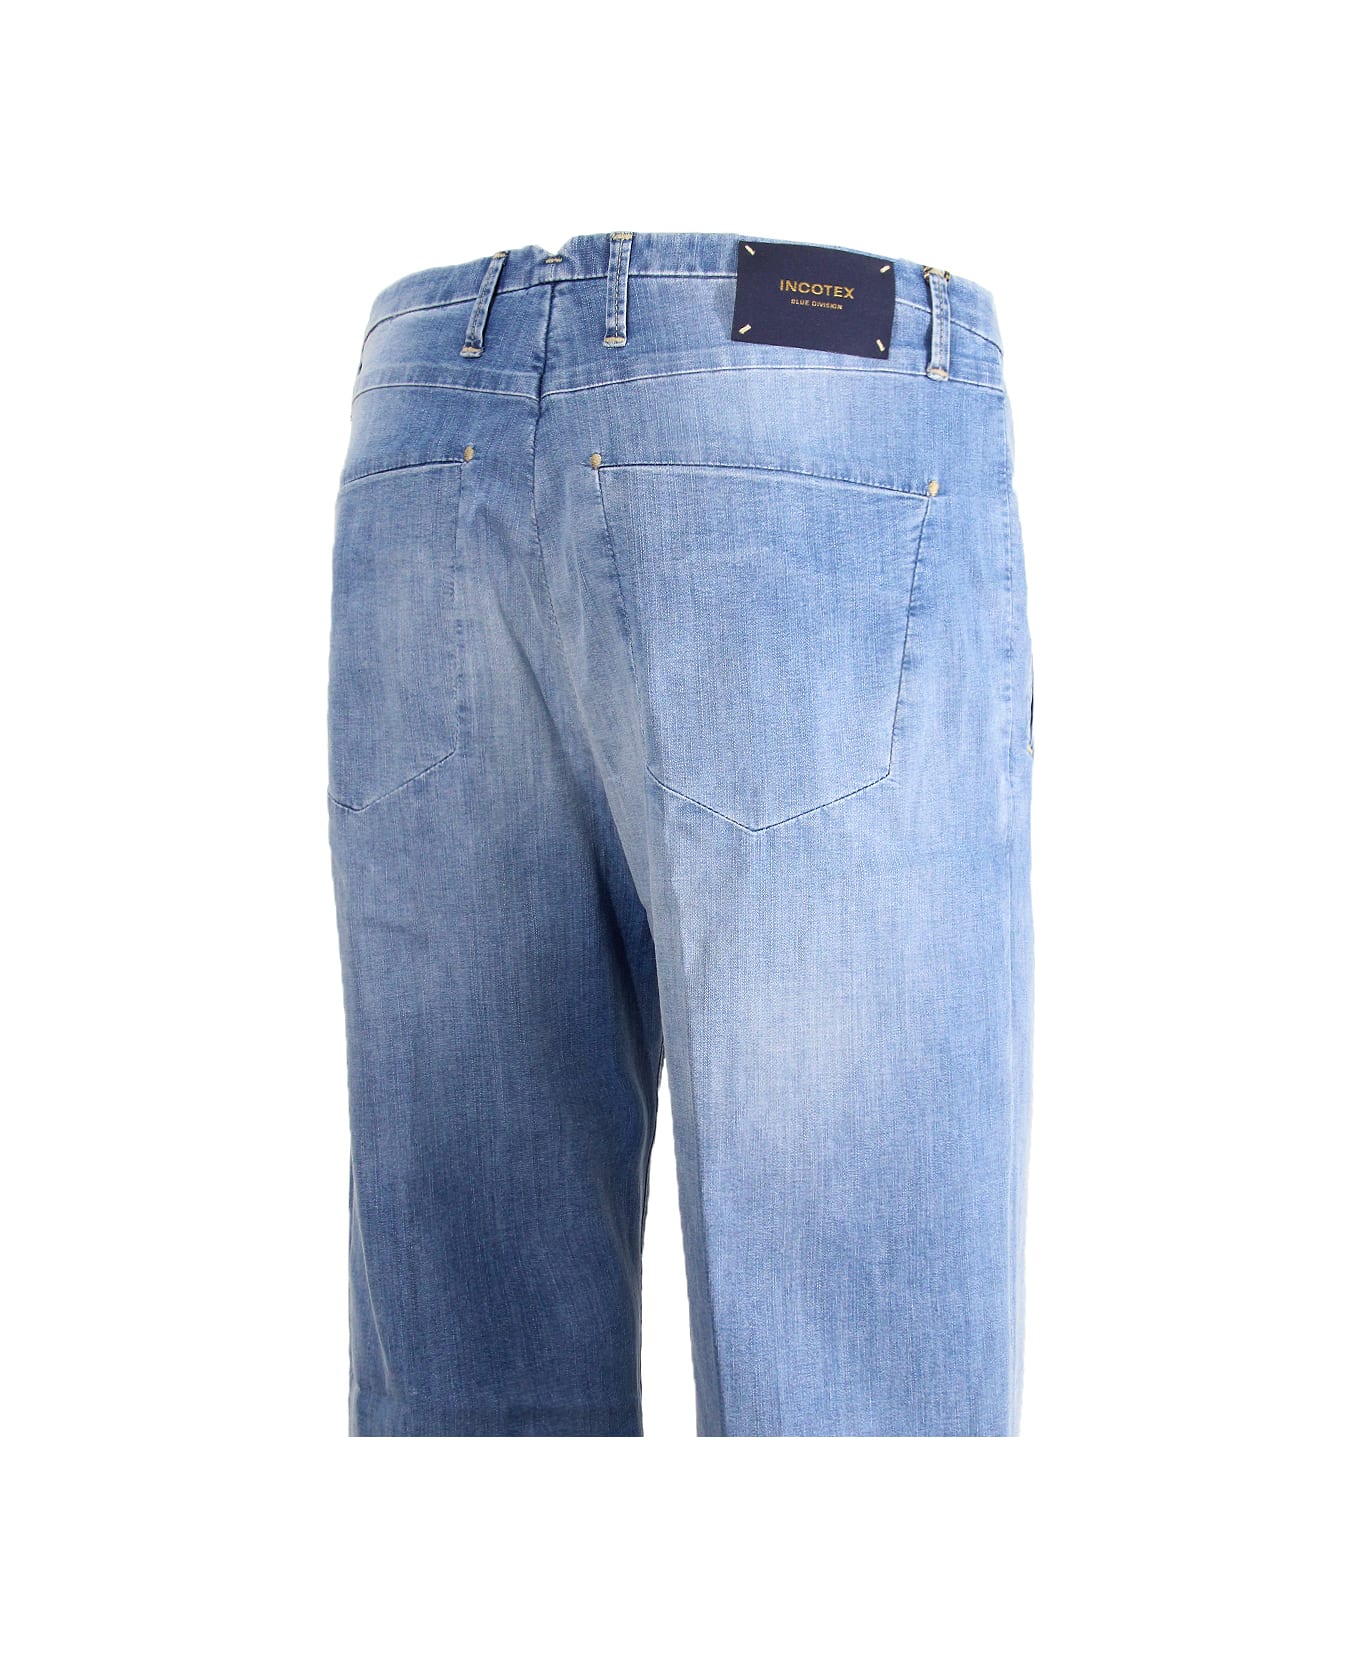 Incotex Jeans Incotex Blue Division - Clear Blue